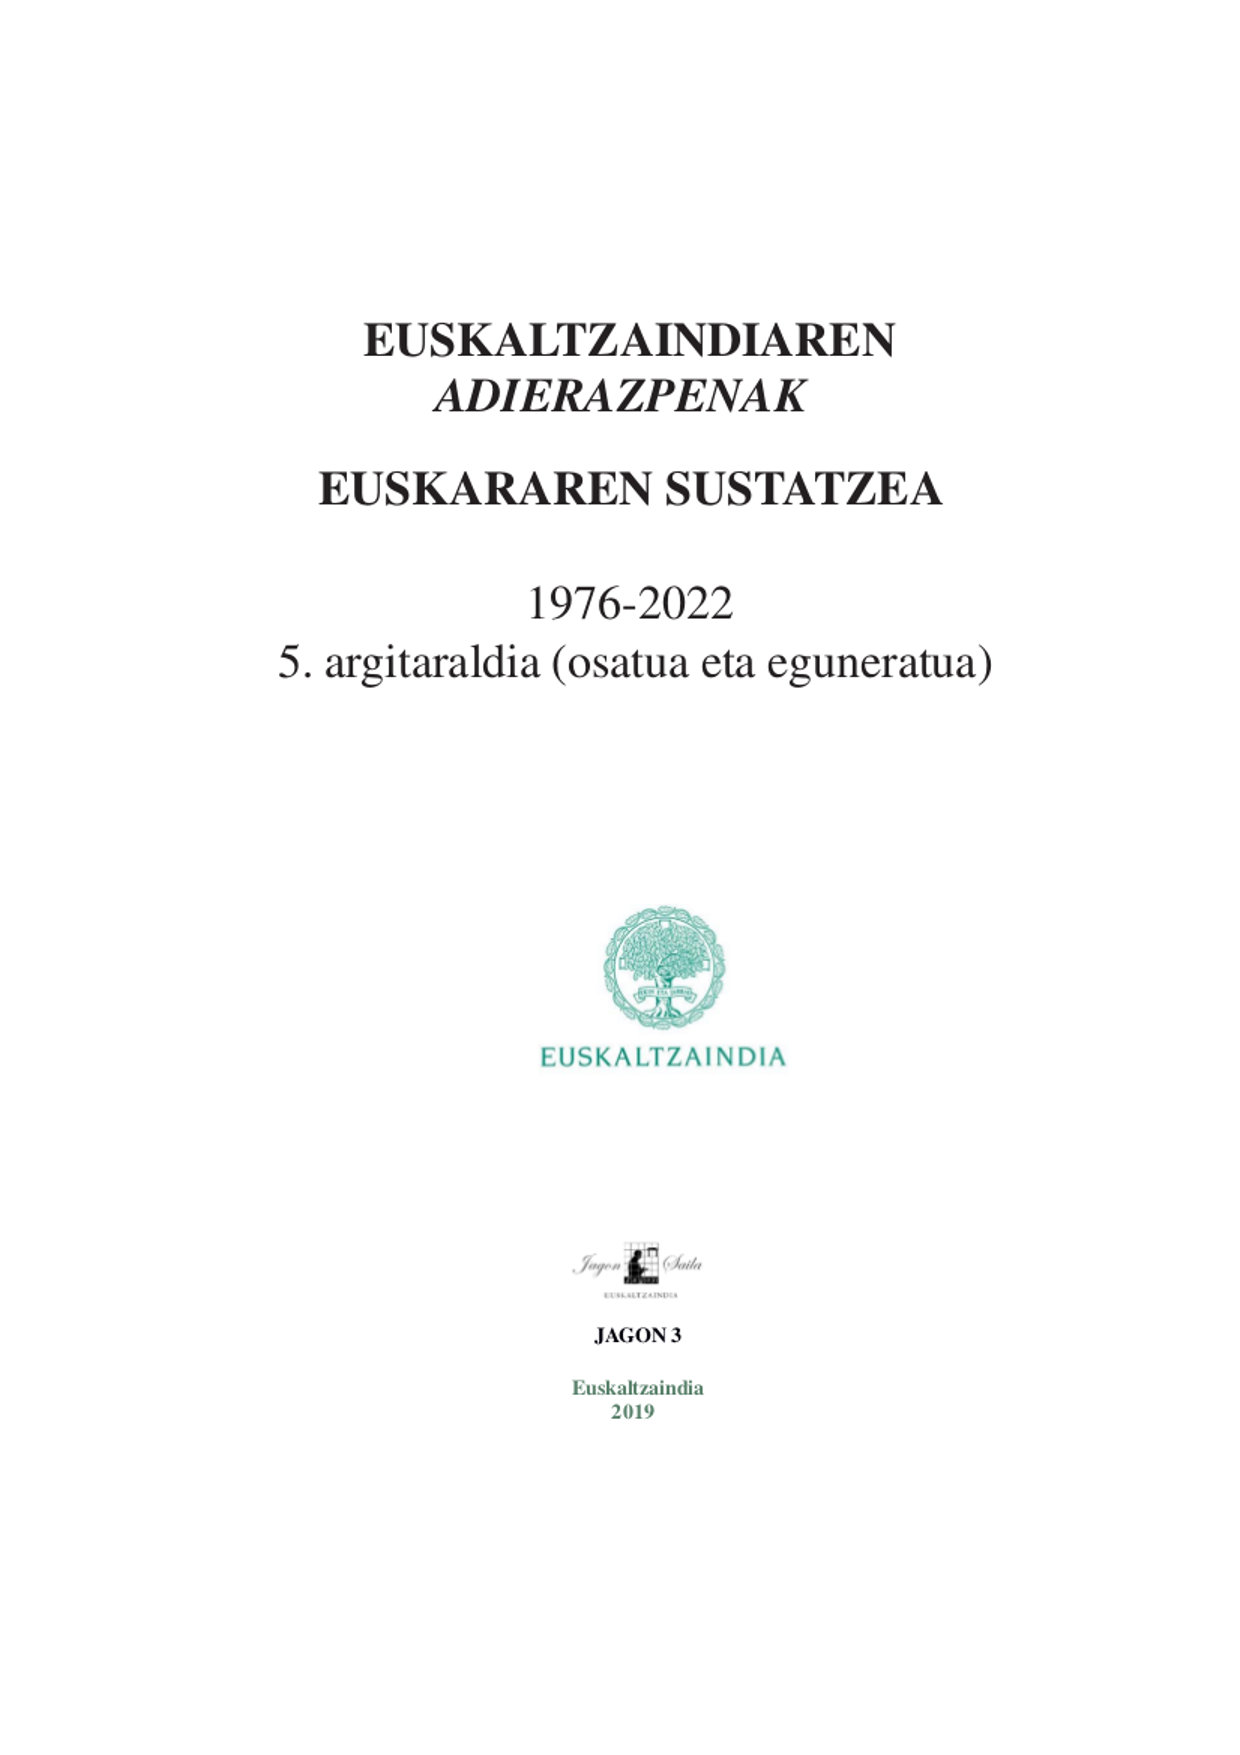 Euskaltzaindiaren adierazpenak (1976-2022)